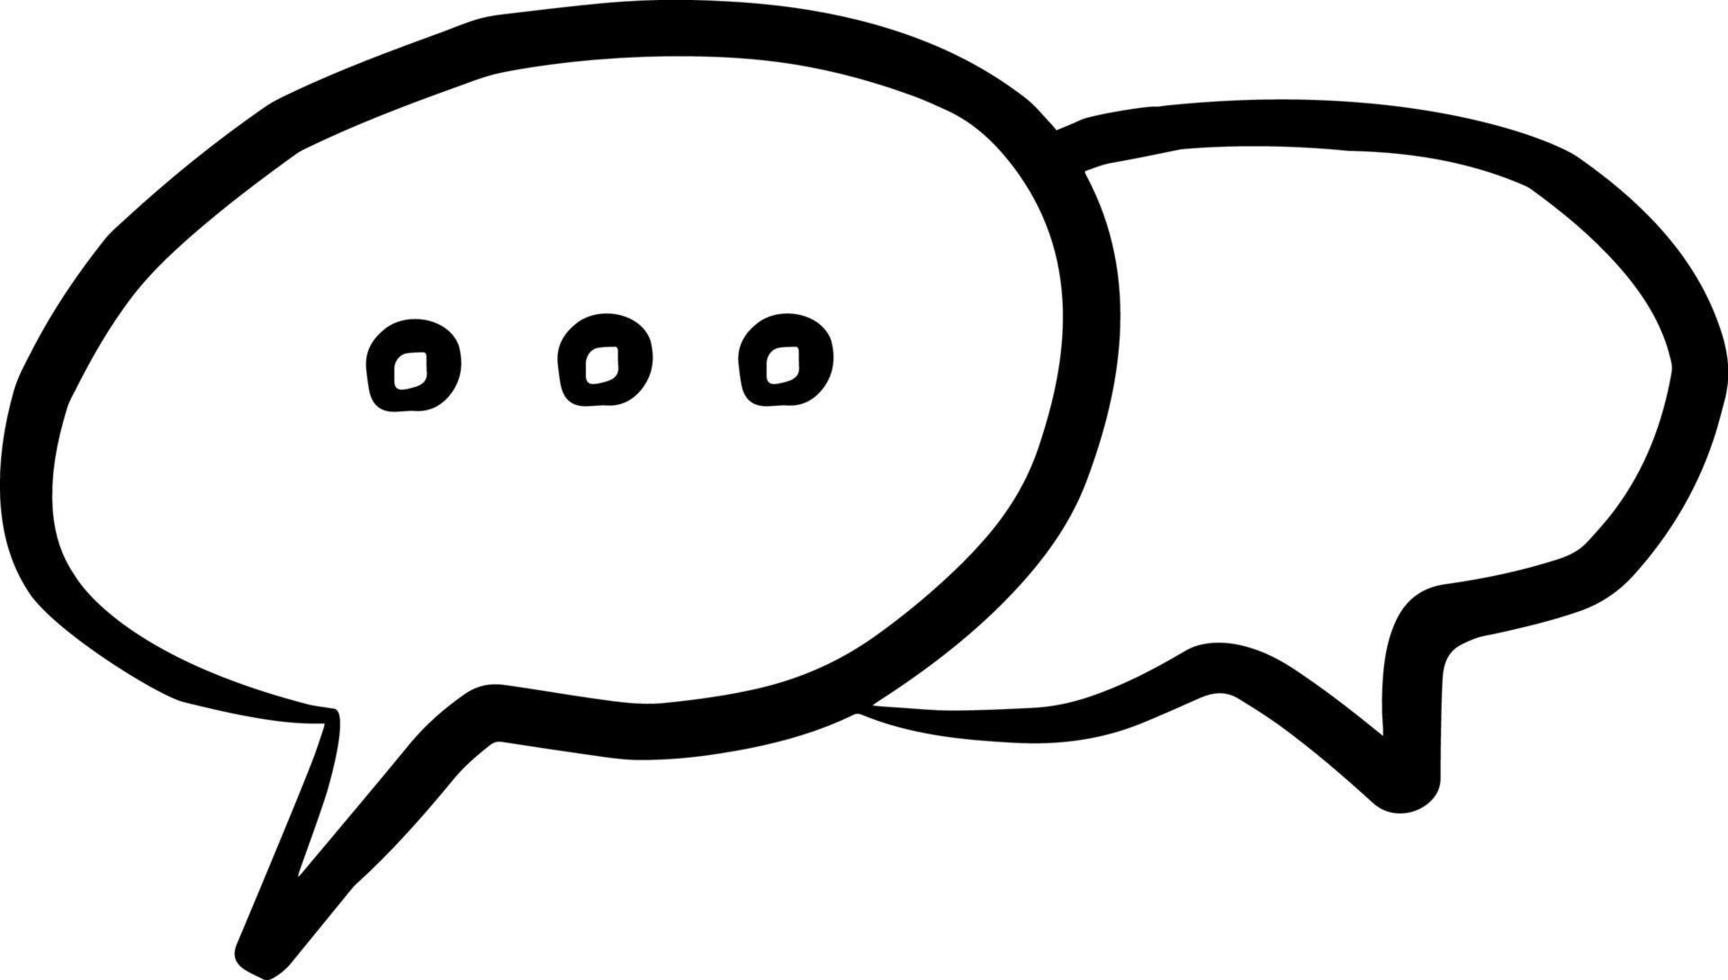 icône de dialogue bulle de dialogue chat vectoriel noir et blanc